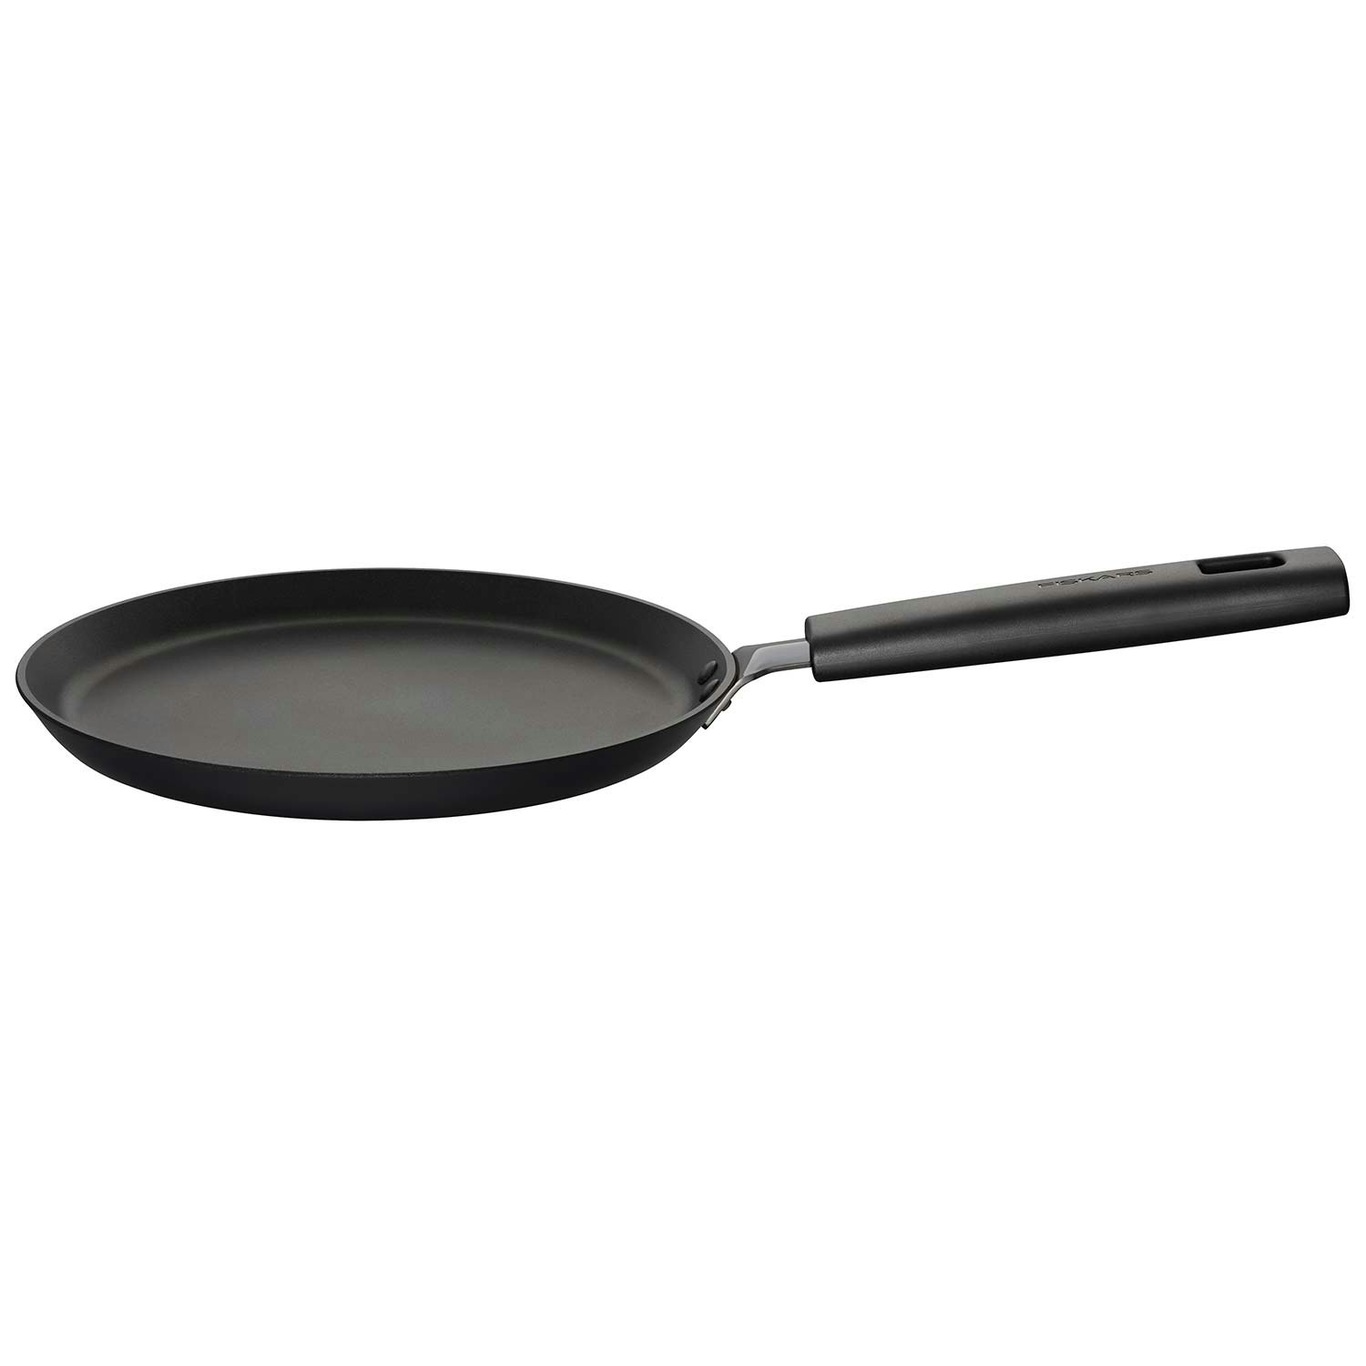 https://royaldesign.com/image/2/fiskars-hard-face-omelette-pancake-pan-22-cm-0?w=800&quality=80